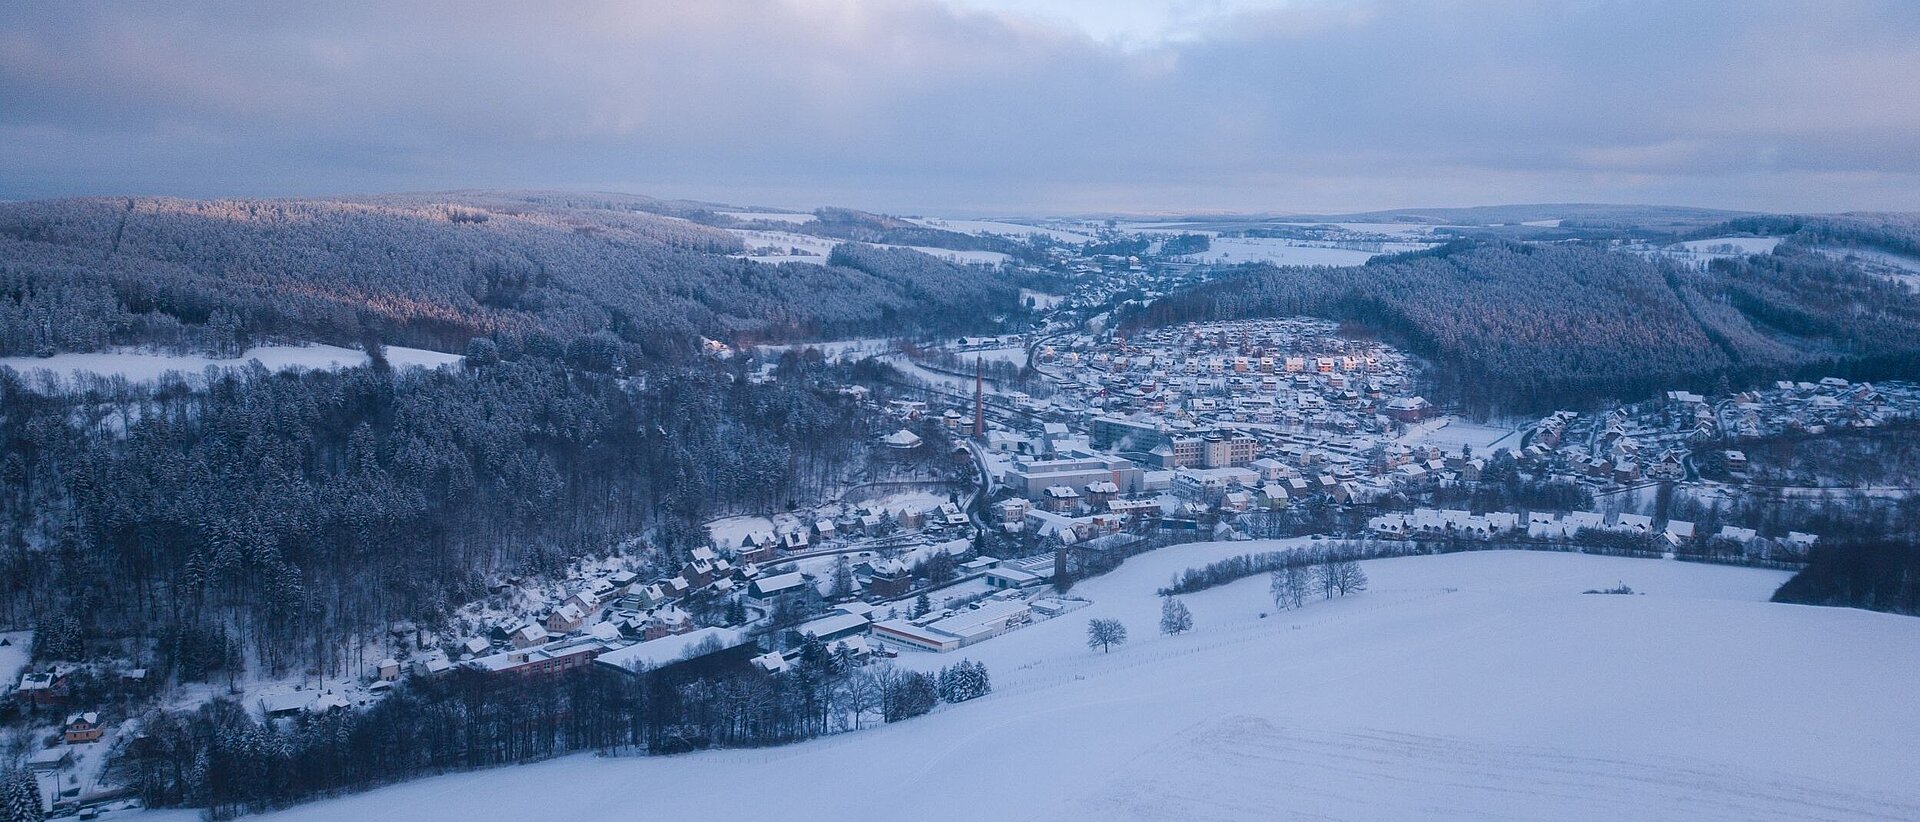 Das Erzgebirges im Winter. Gornsdorf, mit seinen Häusern und Gebäuden, sowie die umliegenden Berge und Wälder sind mit Schnee überzogen.